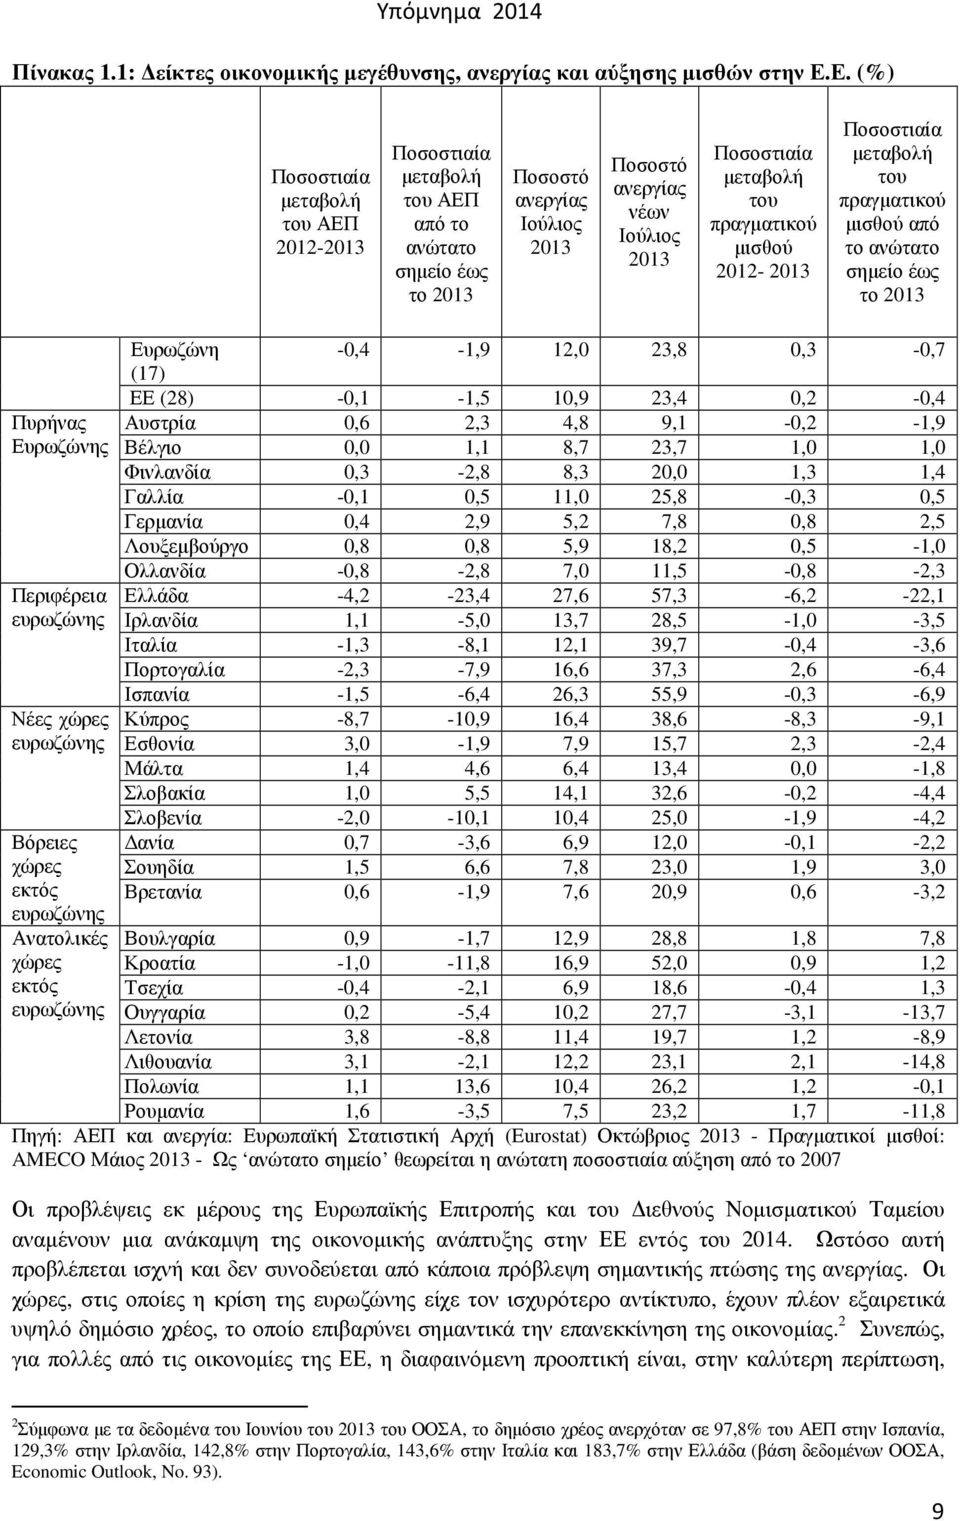 πραγµατικού µισθού 2012-2013 Ποσοστιαία µεταβολή του πραγµατικού µισθού από το ανώτατο σηµείο έως το 2013 Πυρήνας Ευρωζώνης Περιφέρεια ευρωζώνης Νέες χώρες ευρωζώνης Βόρειες χώρες εκτός ευρωζώνης